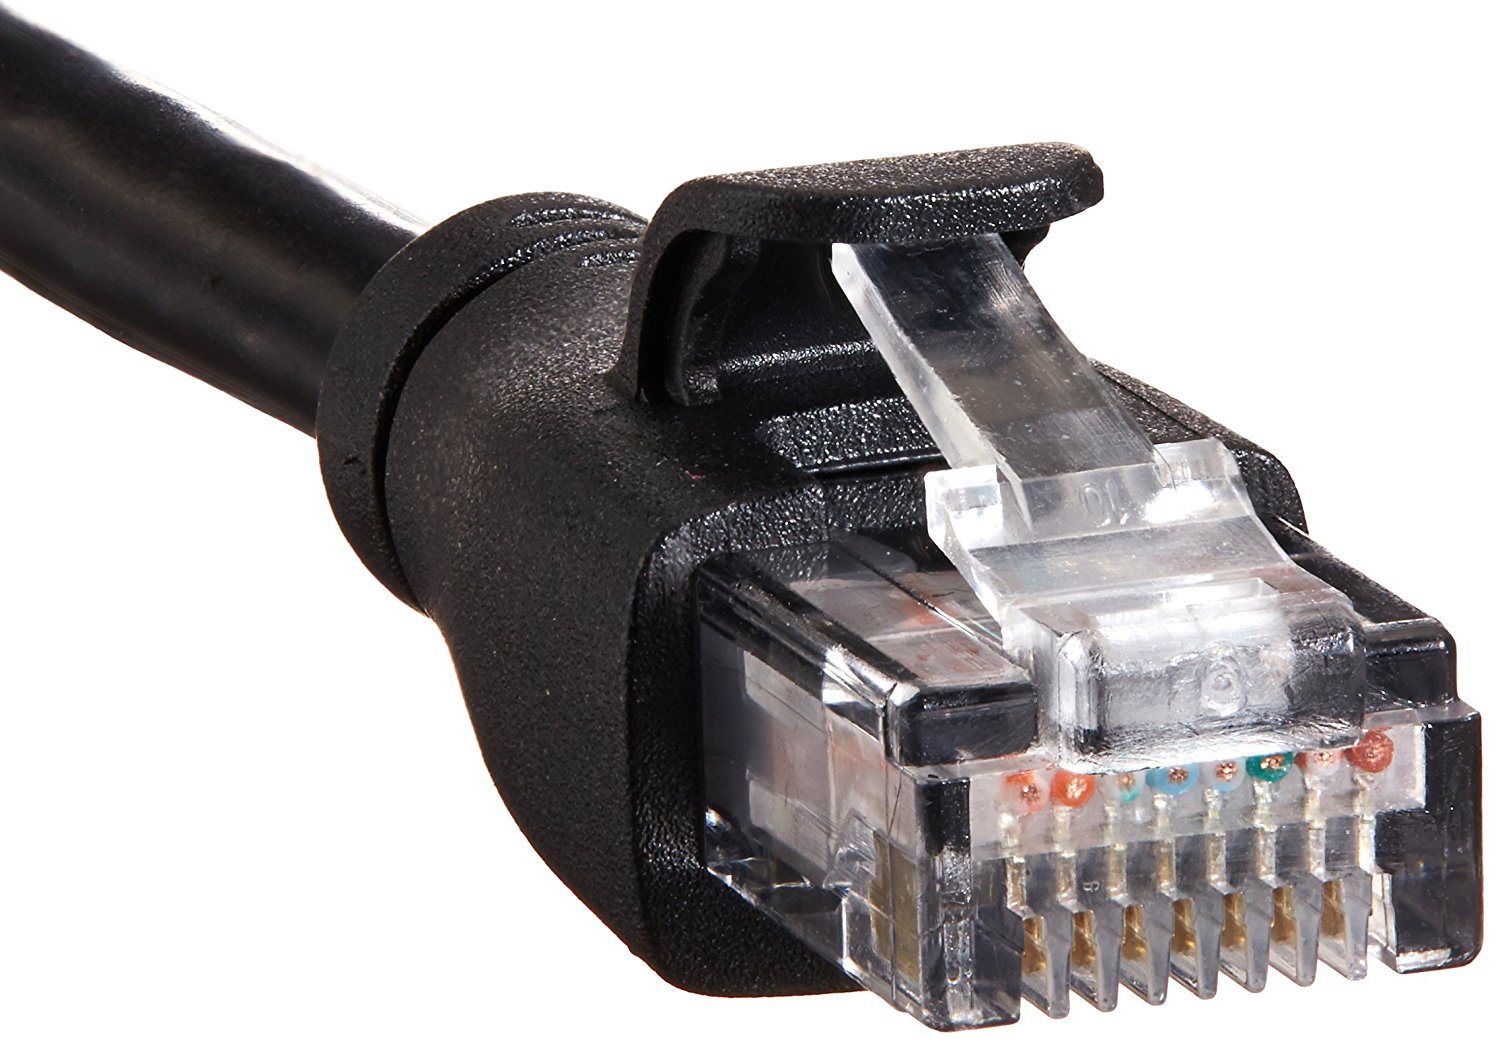 Câble Ethernet (RJ45) : lequel choisir pour profiter au max de sa fibre ?